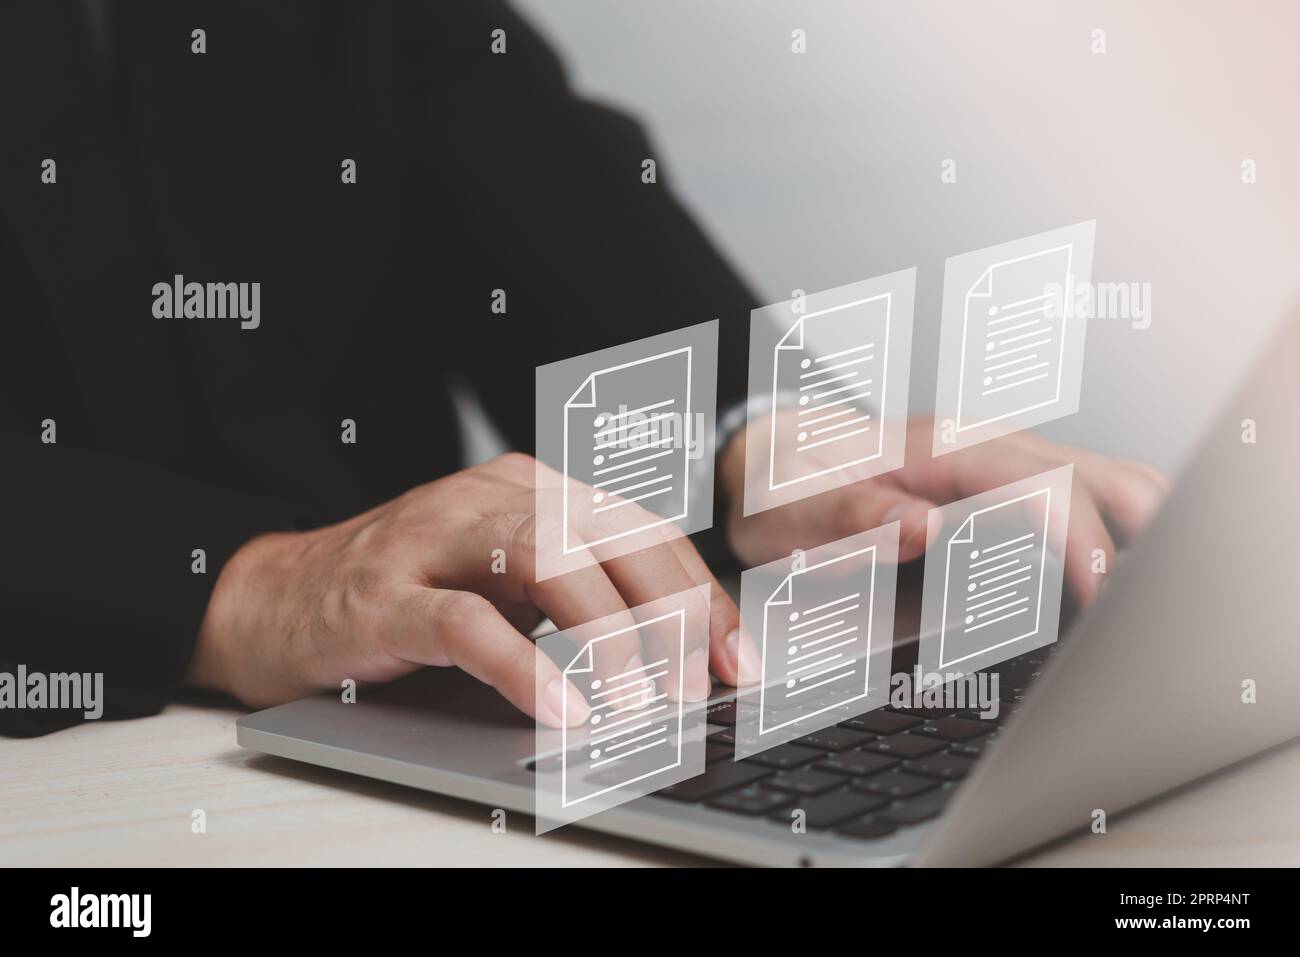 Écran virtuel du système de gestion de l'information d'entreprise du système de gestion de documents numériques (DMS). Banque D'Images